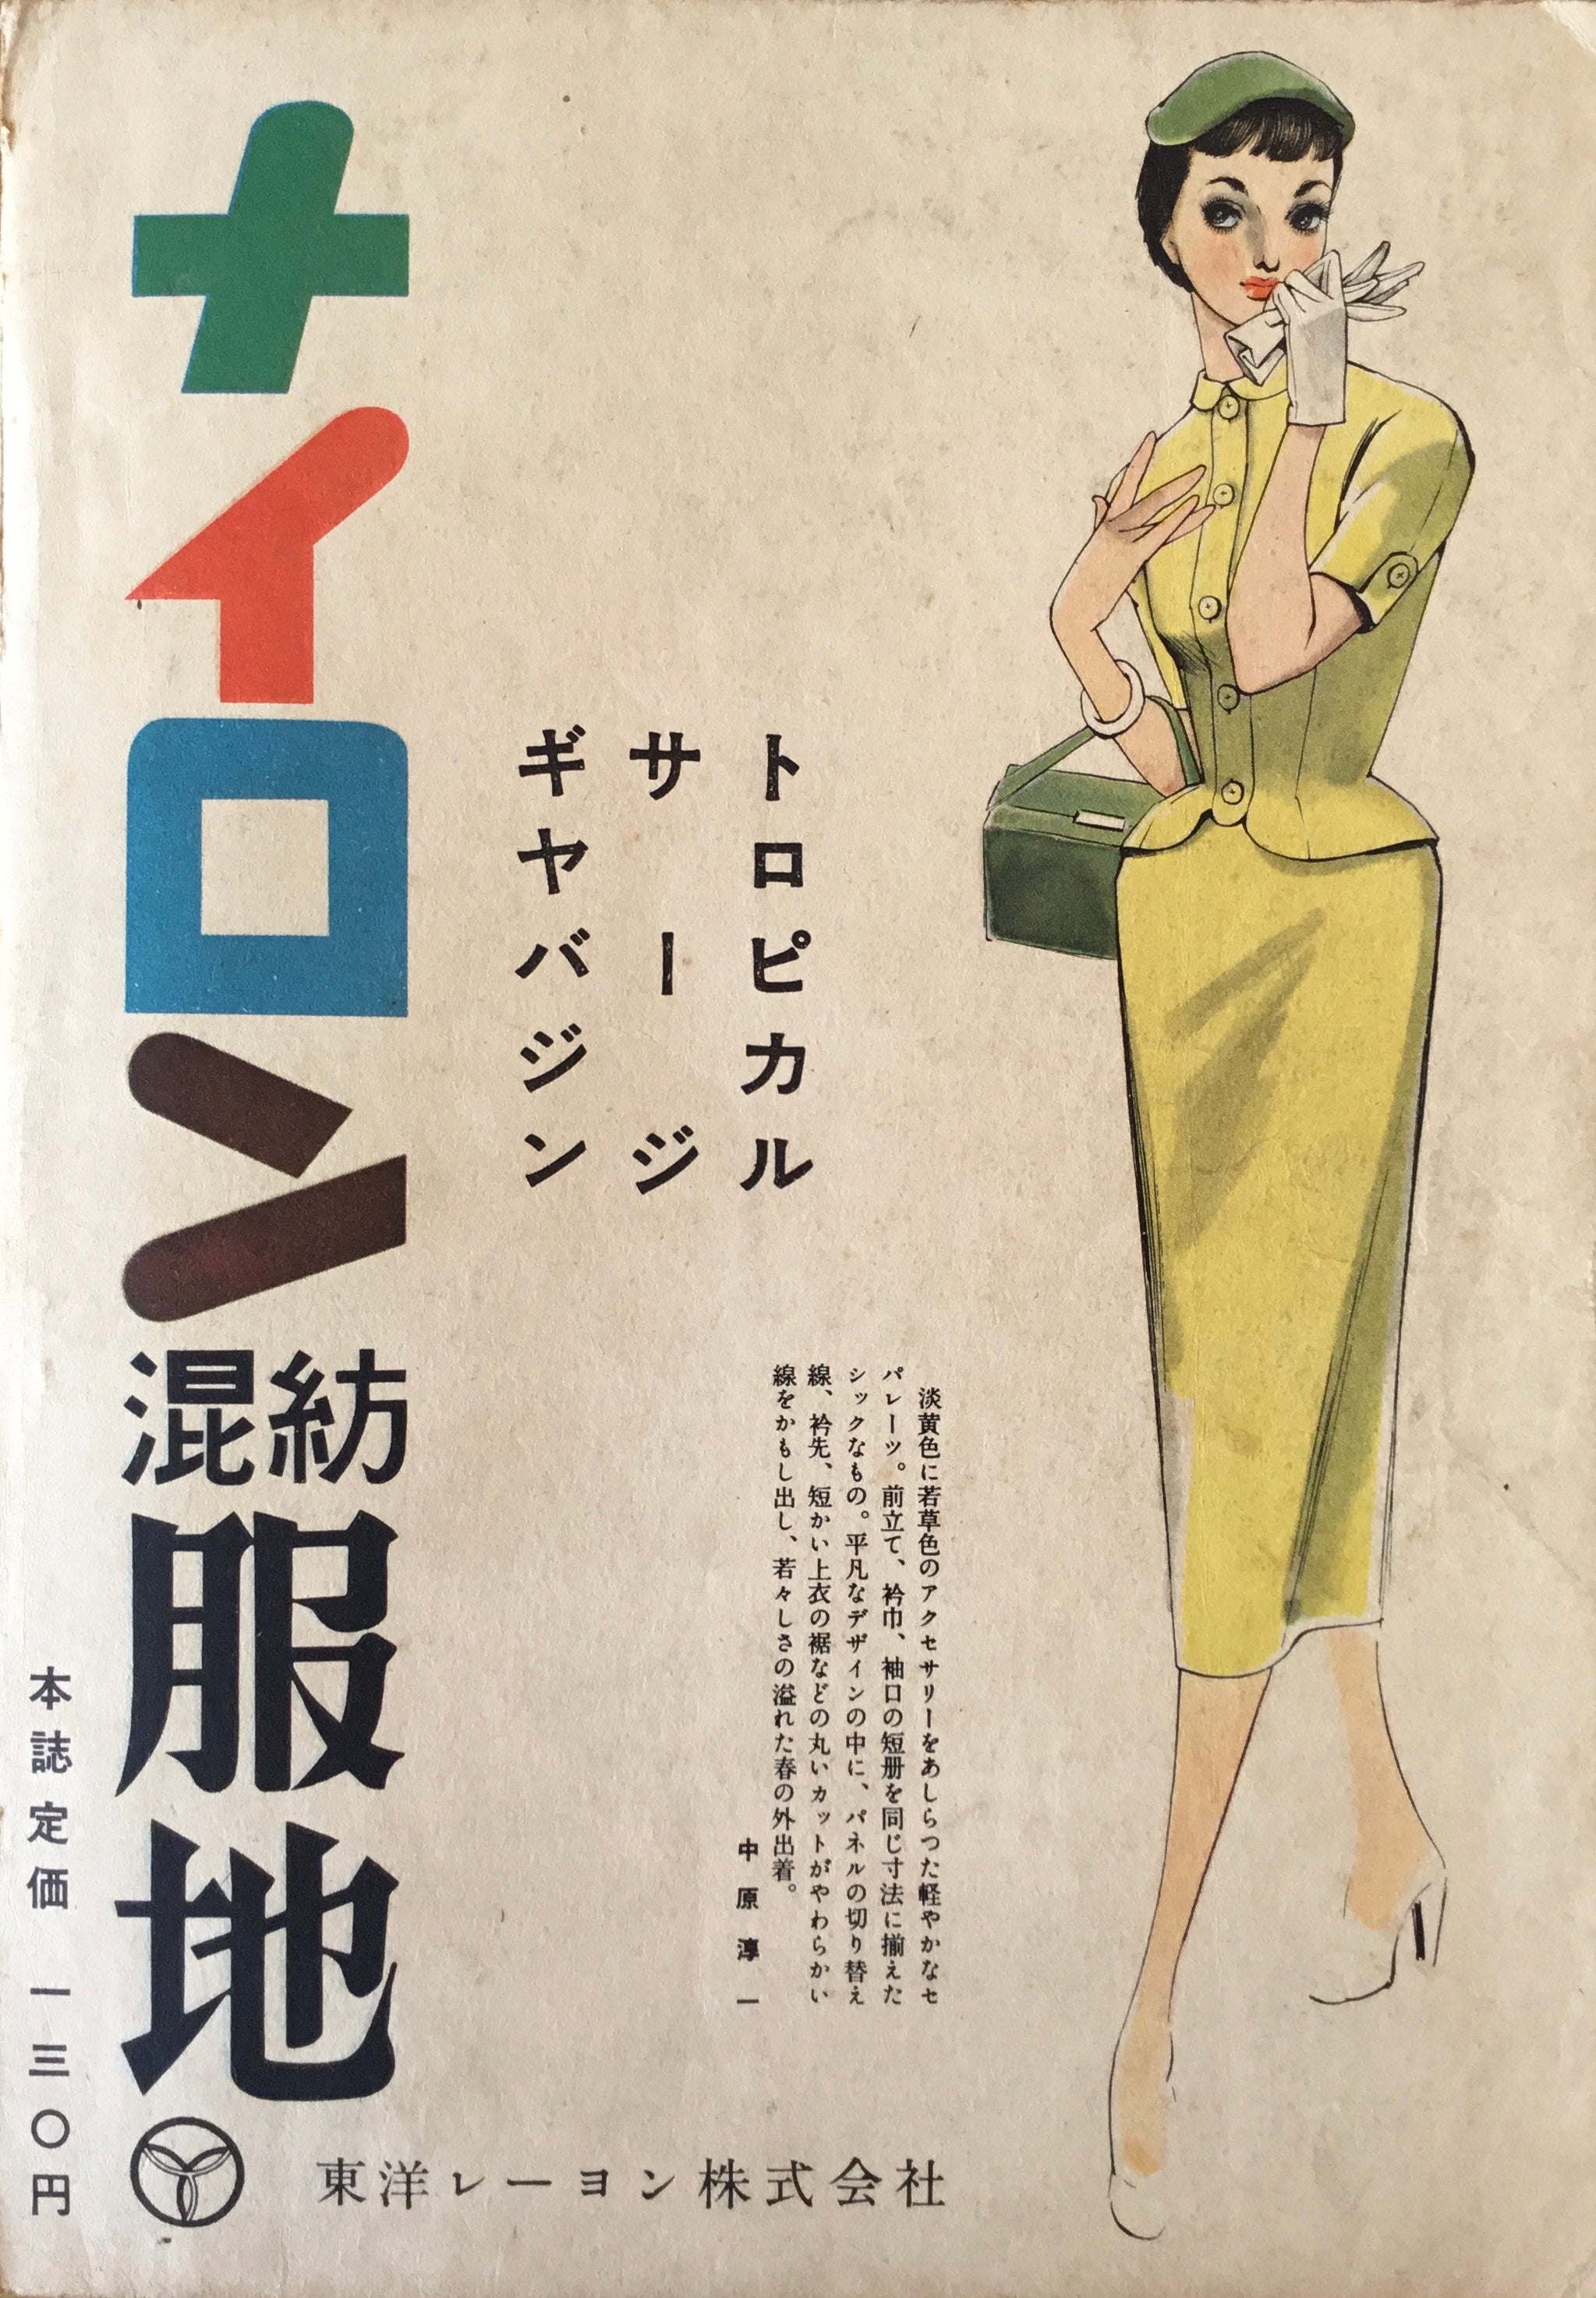 月刊 それいゆ 昭和29年 3月号 – smokebooks shop